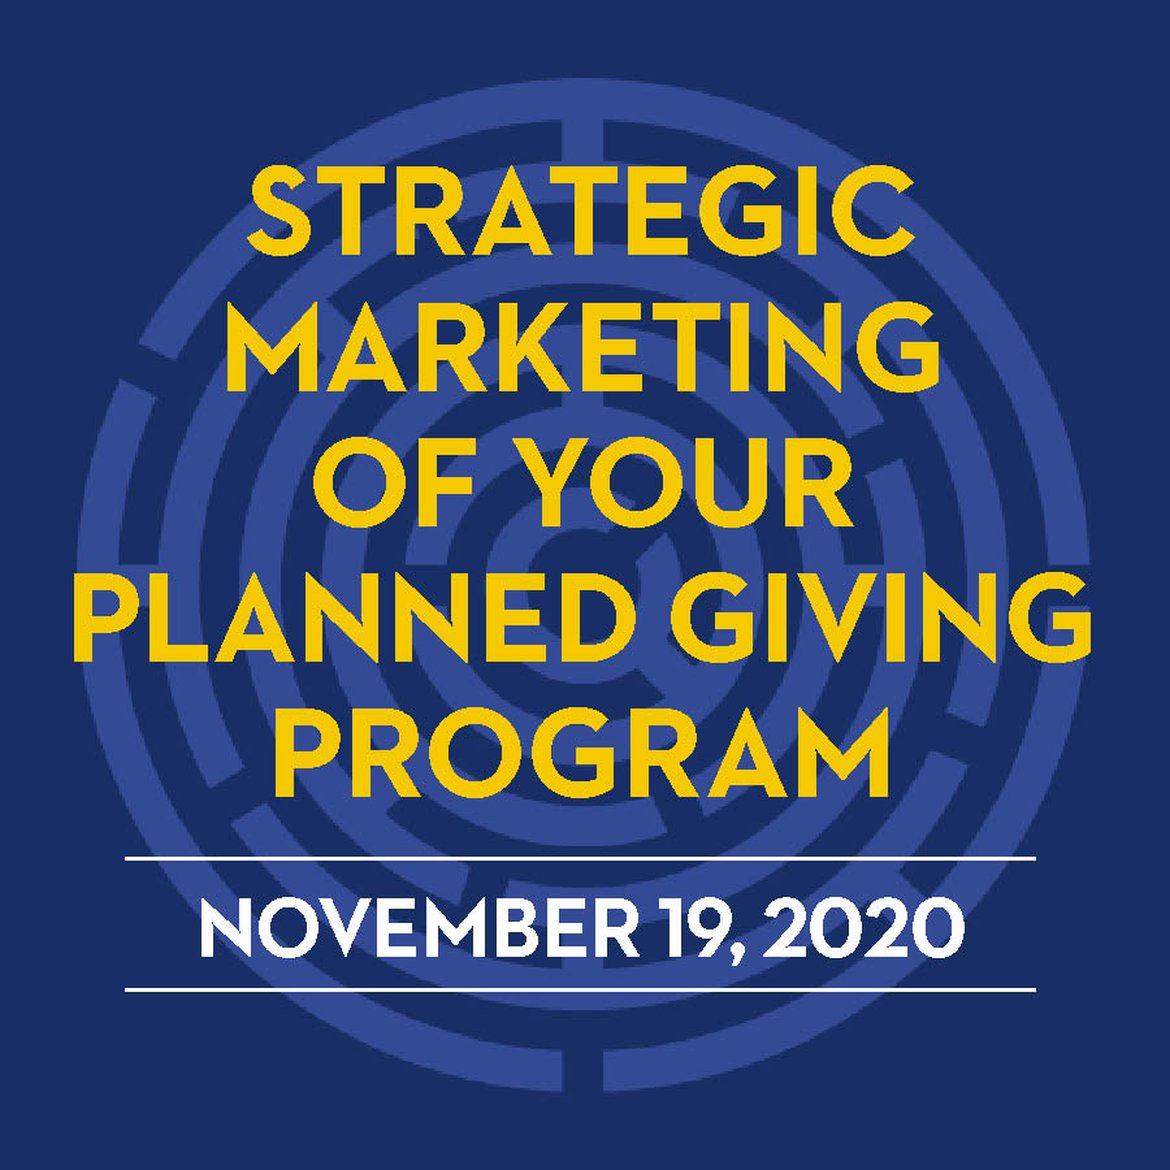 Strategic Marketing of Your Planned Giving Program - November 19, 2020